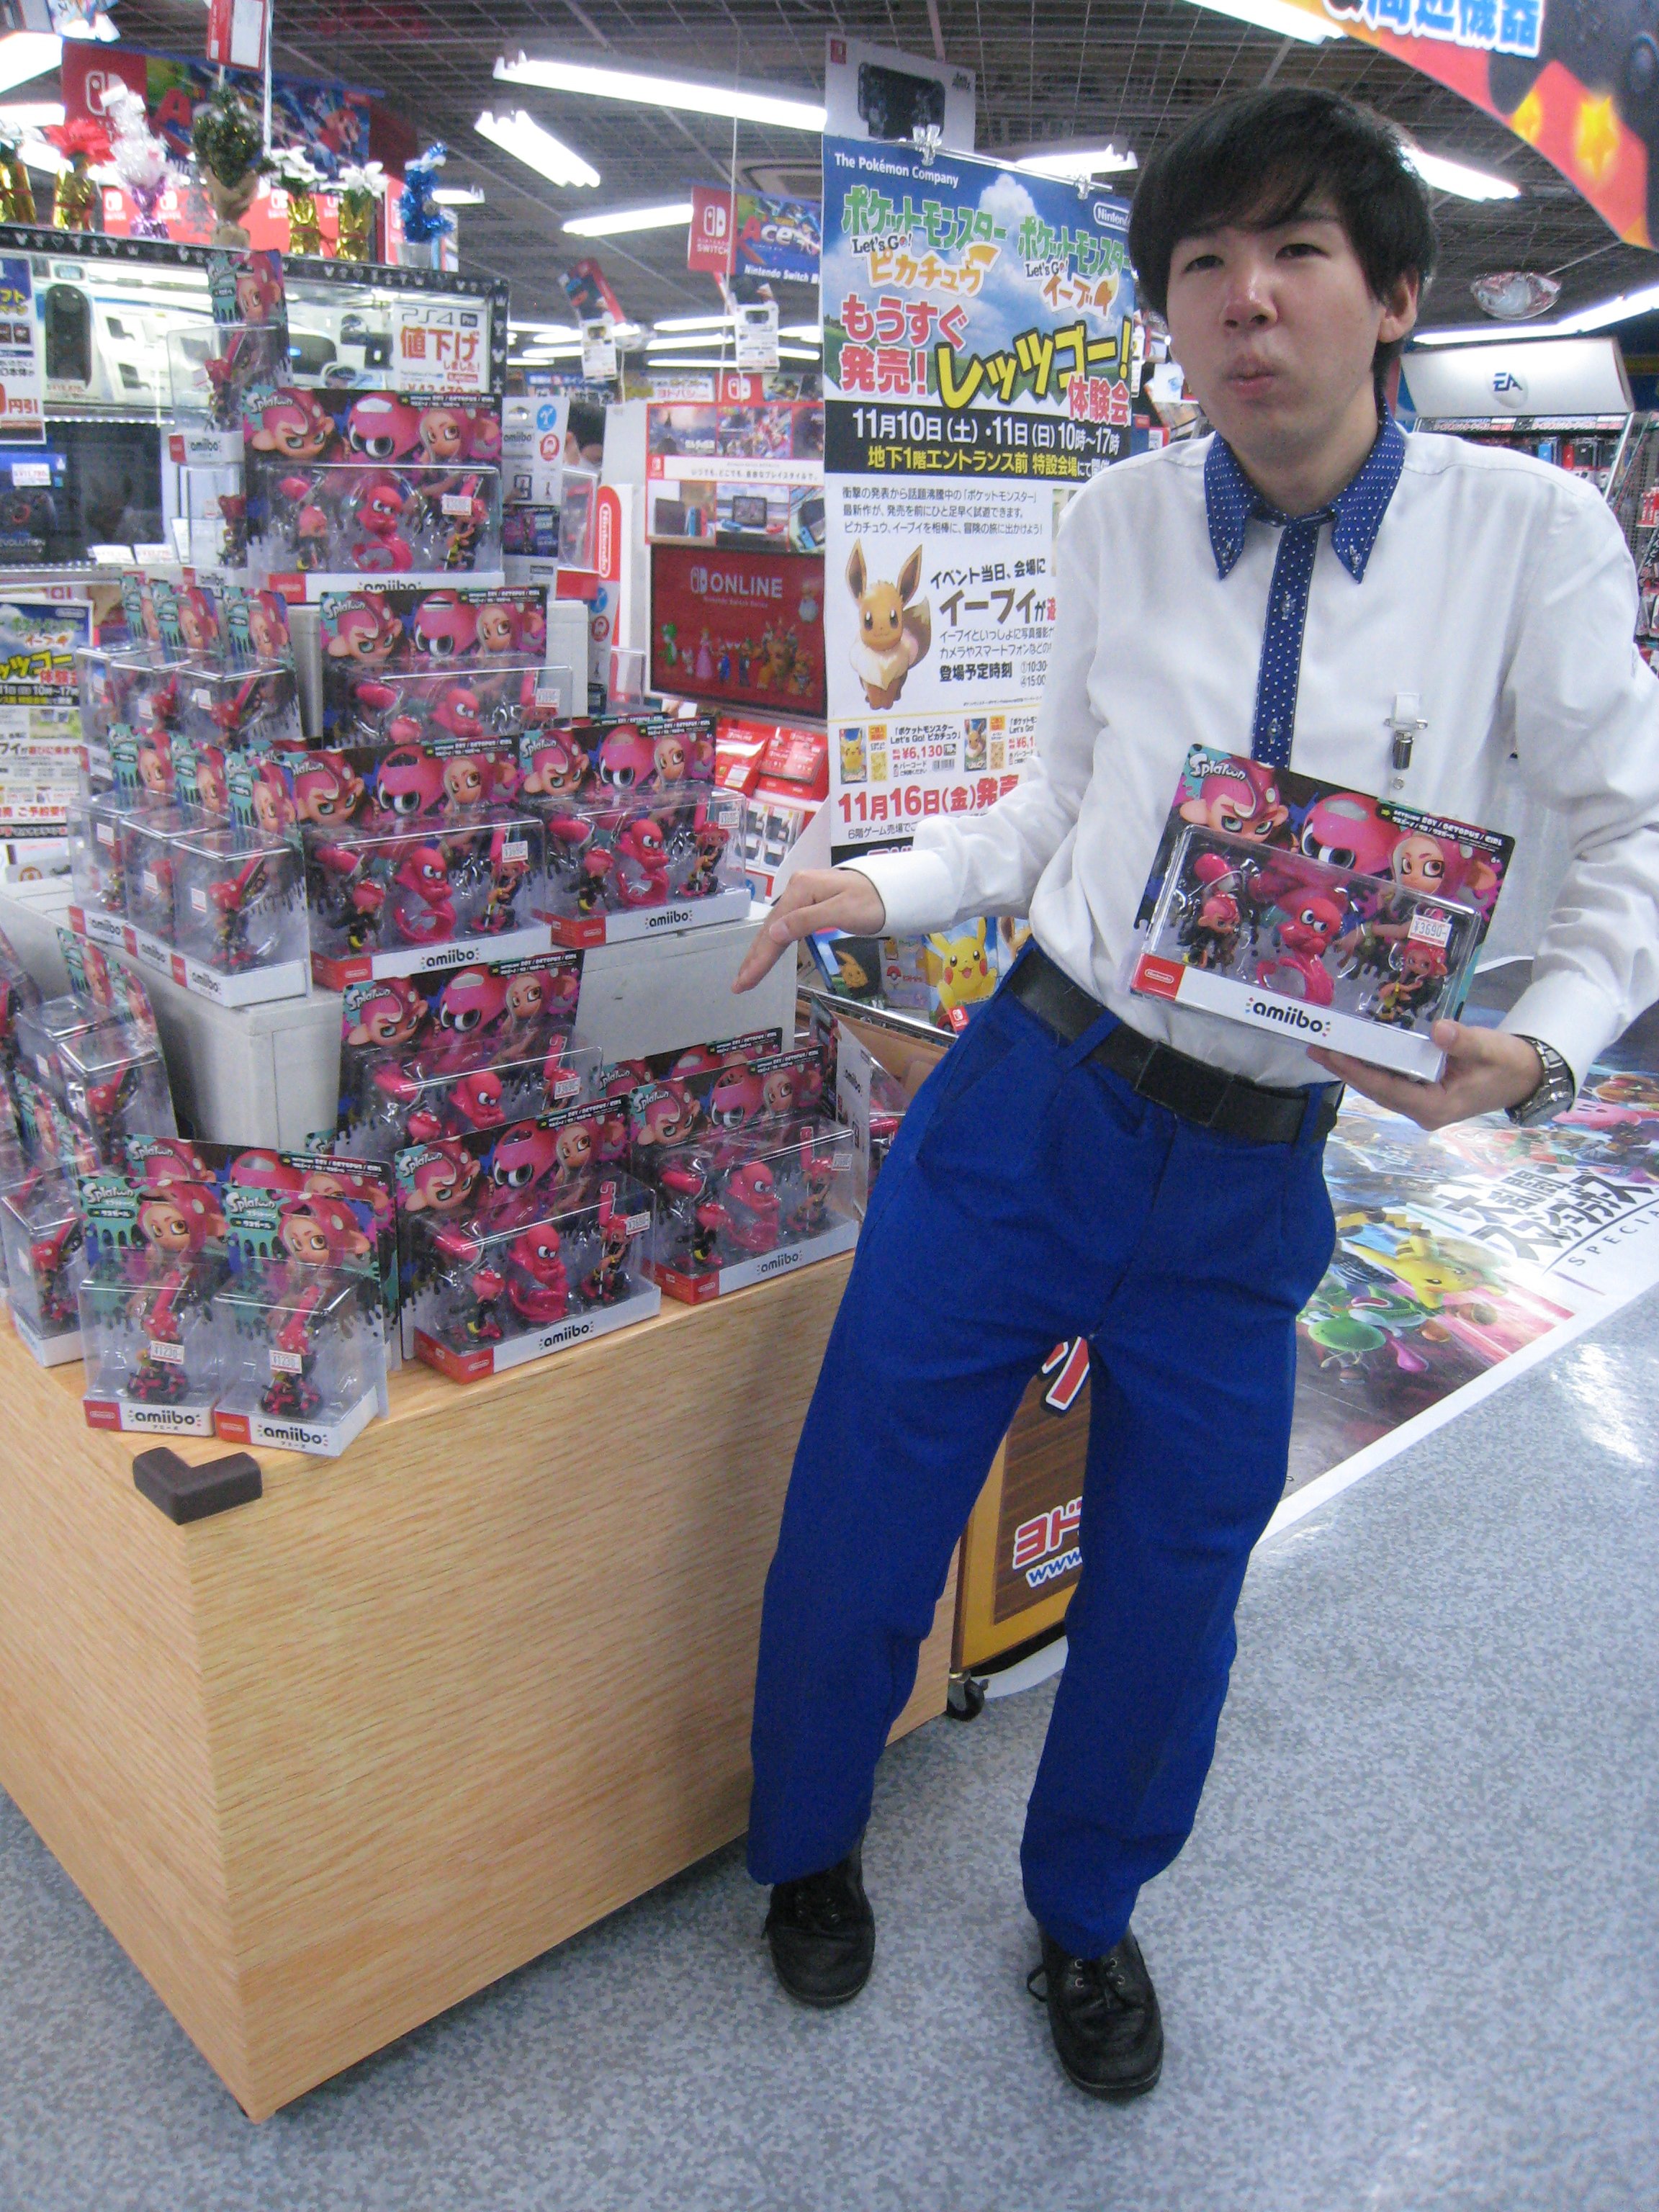 ヨドバシカメラ 横浜店 タコ 入荷しました Amiibo 最新商品 追加コンテンツ オクト エキスパンション が好評配信中の スプラトゥーン2 より タコ タコガール タコボーイの3種が新発売です ぜひ特設コーナーにご来店ください 当店で